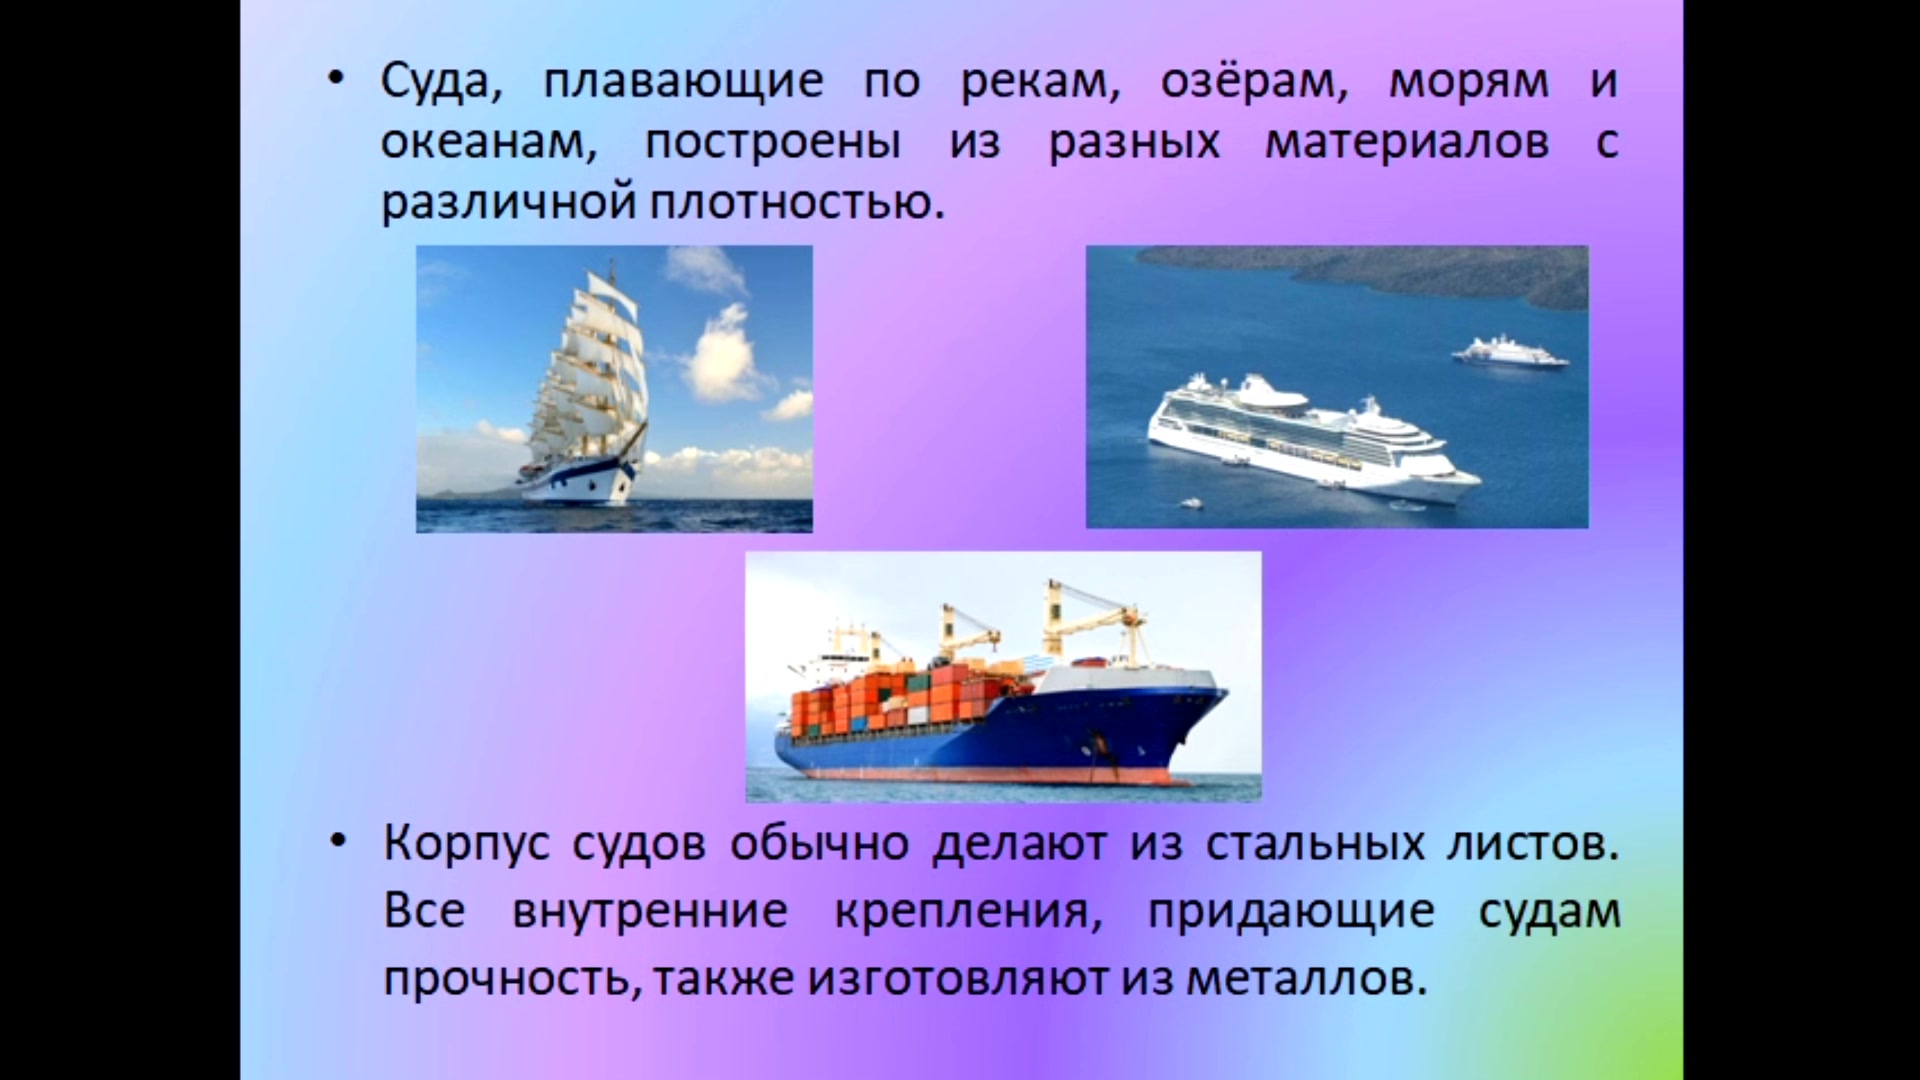 Плавание судов воздухоплавание физика кратко. Плавание судов воздухоплавание физика 7 класс. Презентация по физике плавание судов. Плавание тел плавание судов. Плавание тел воздухоплавание 7 класс физика.